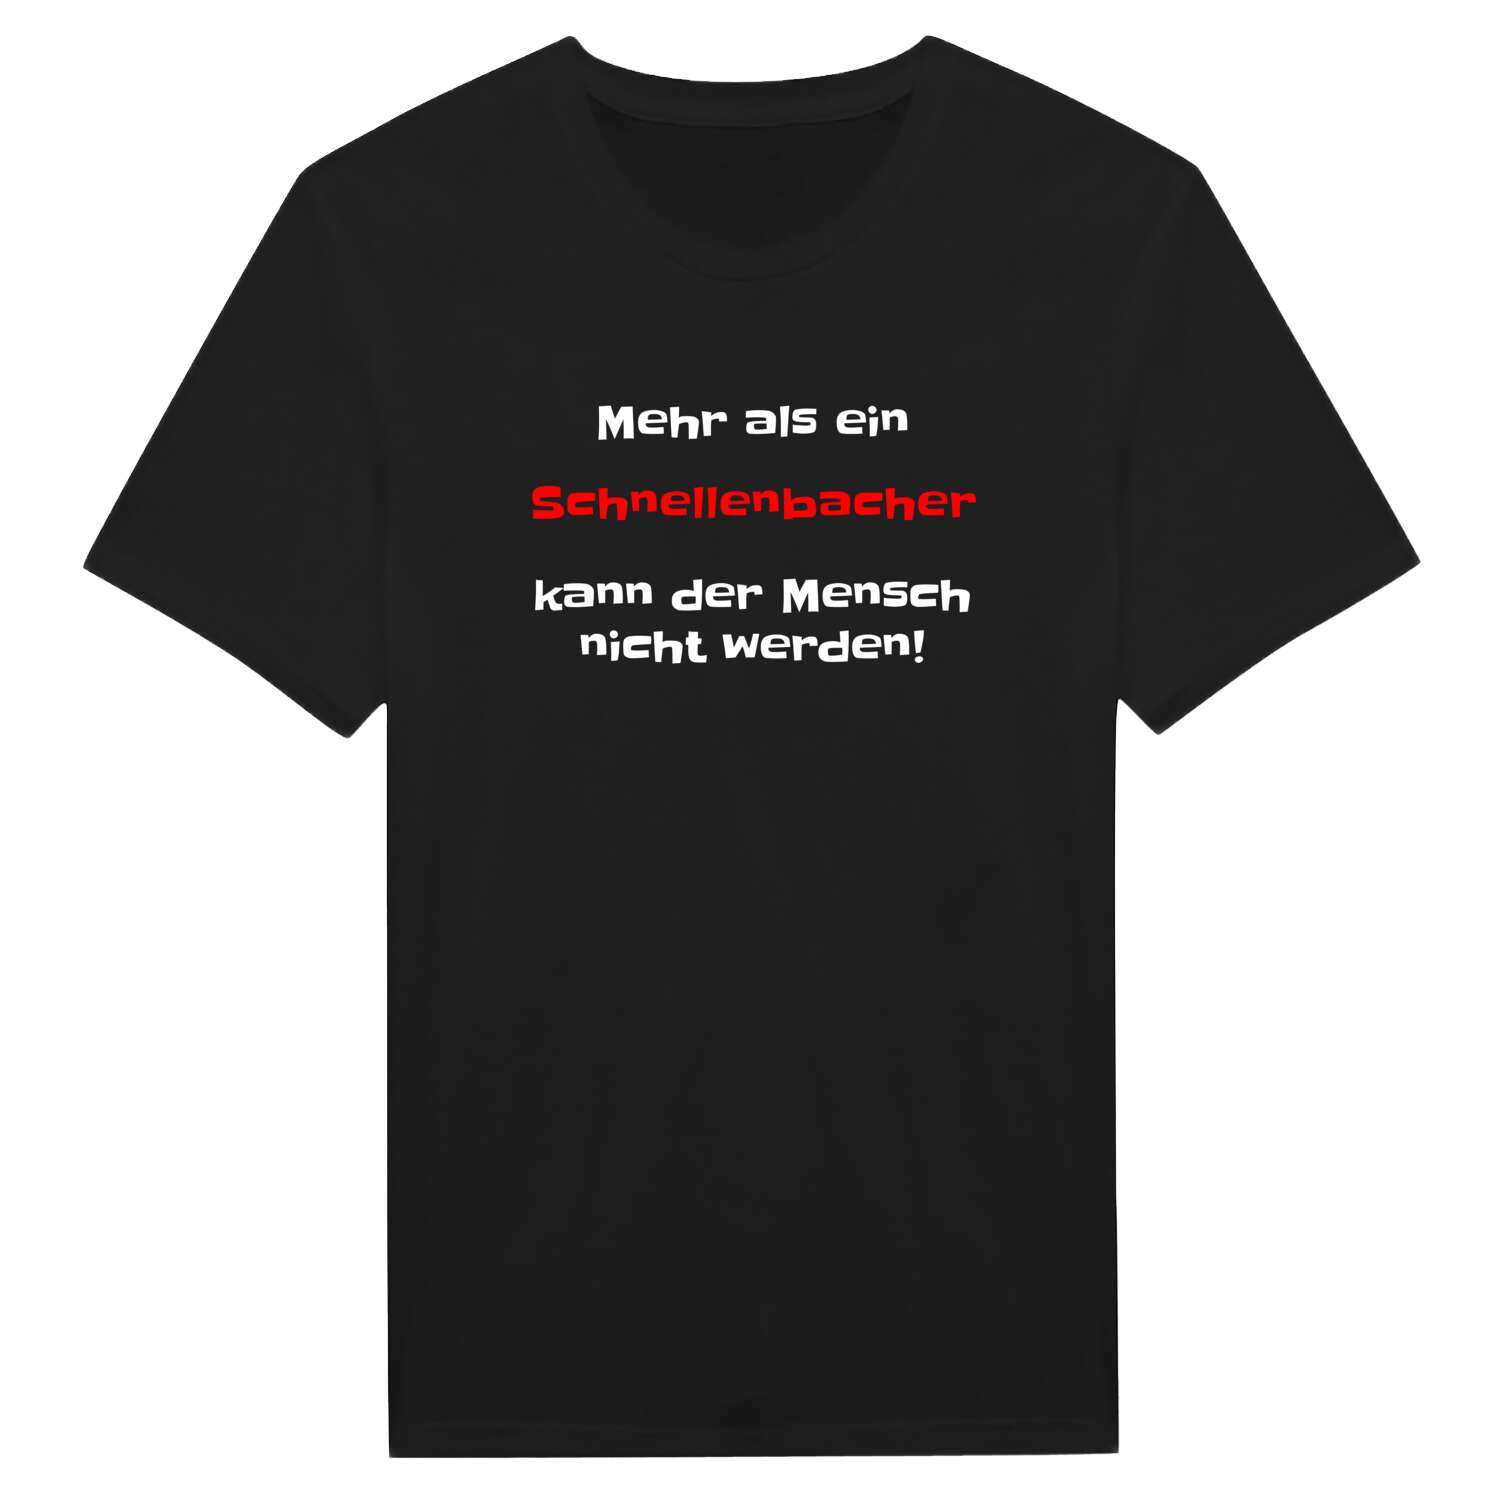 Schnellenbach T-Shirt »Mehr als ein«